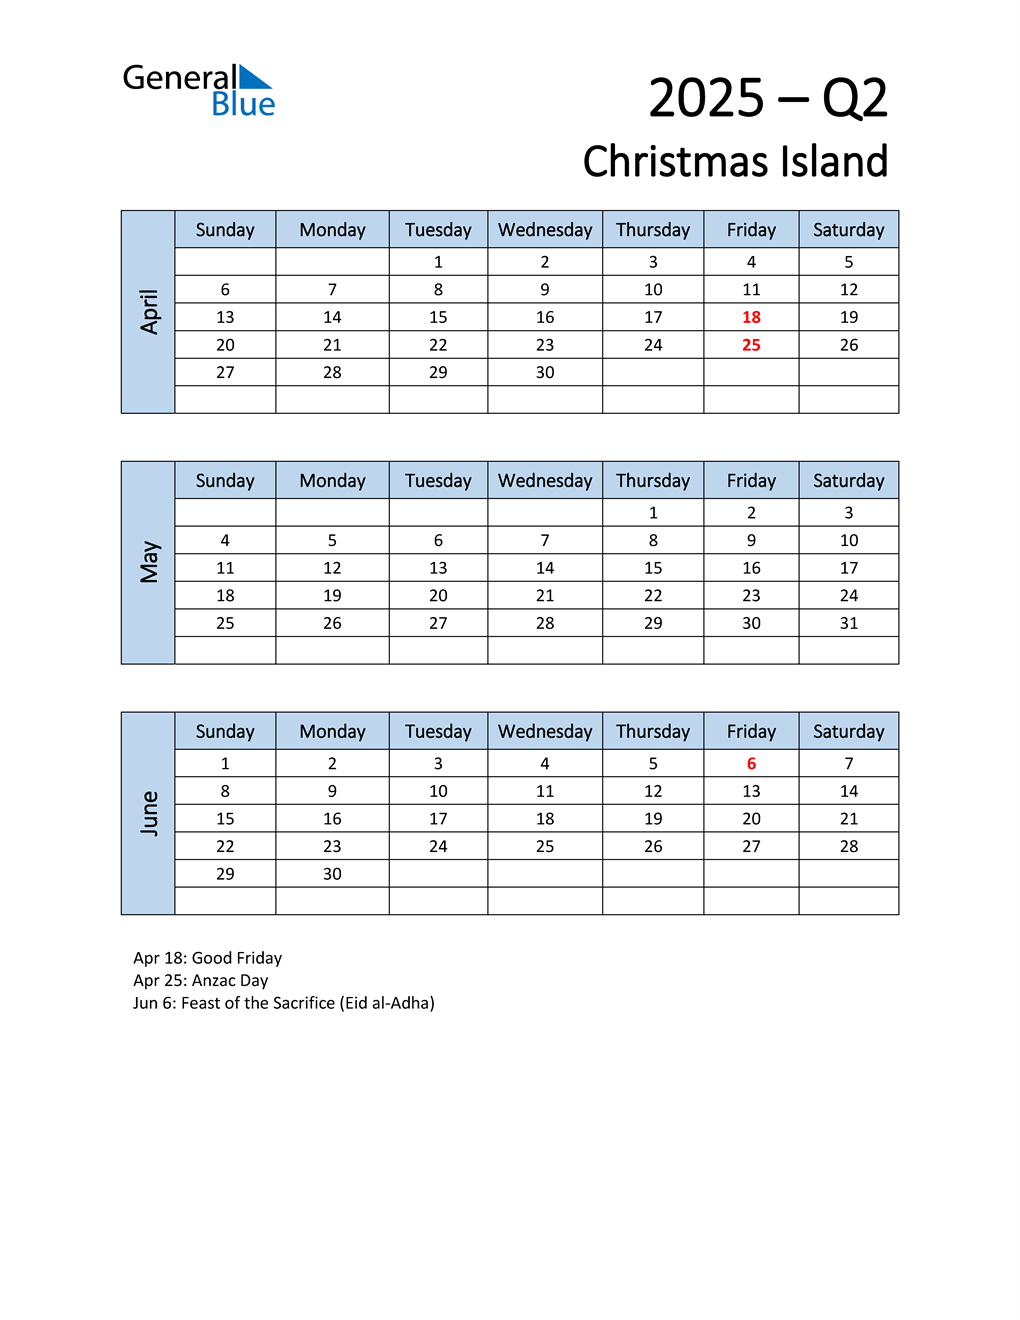  Free Q2 2025 Calendar for Christmas Island